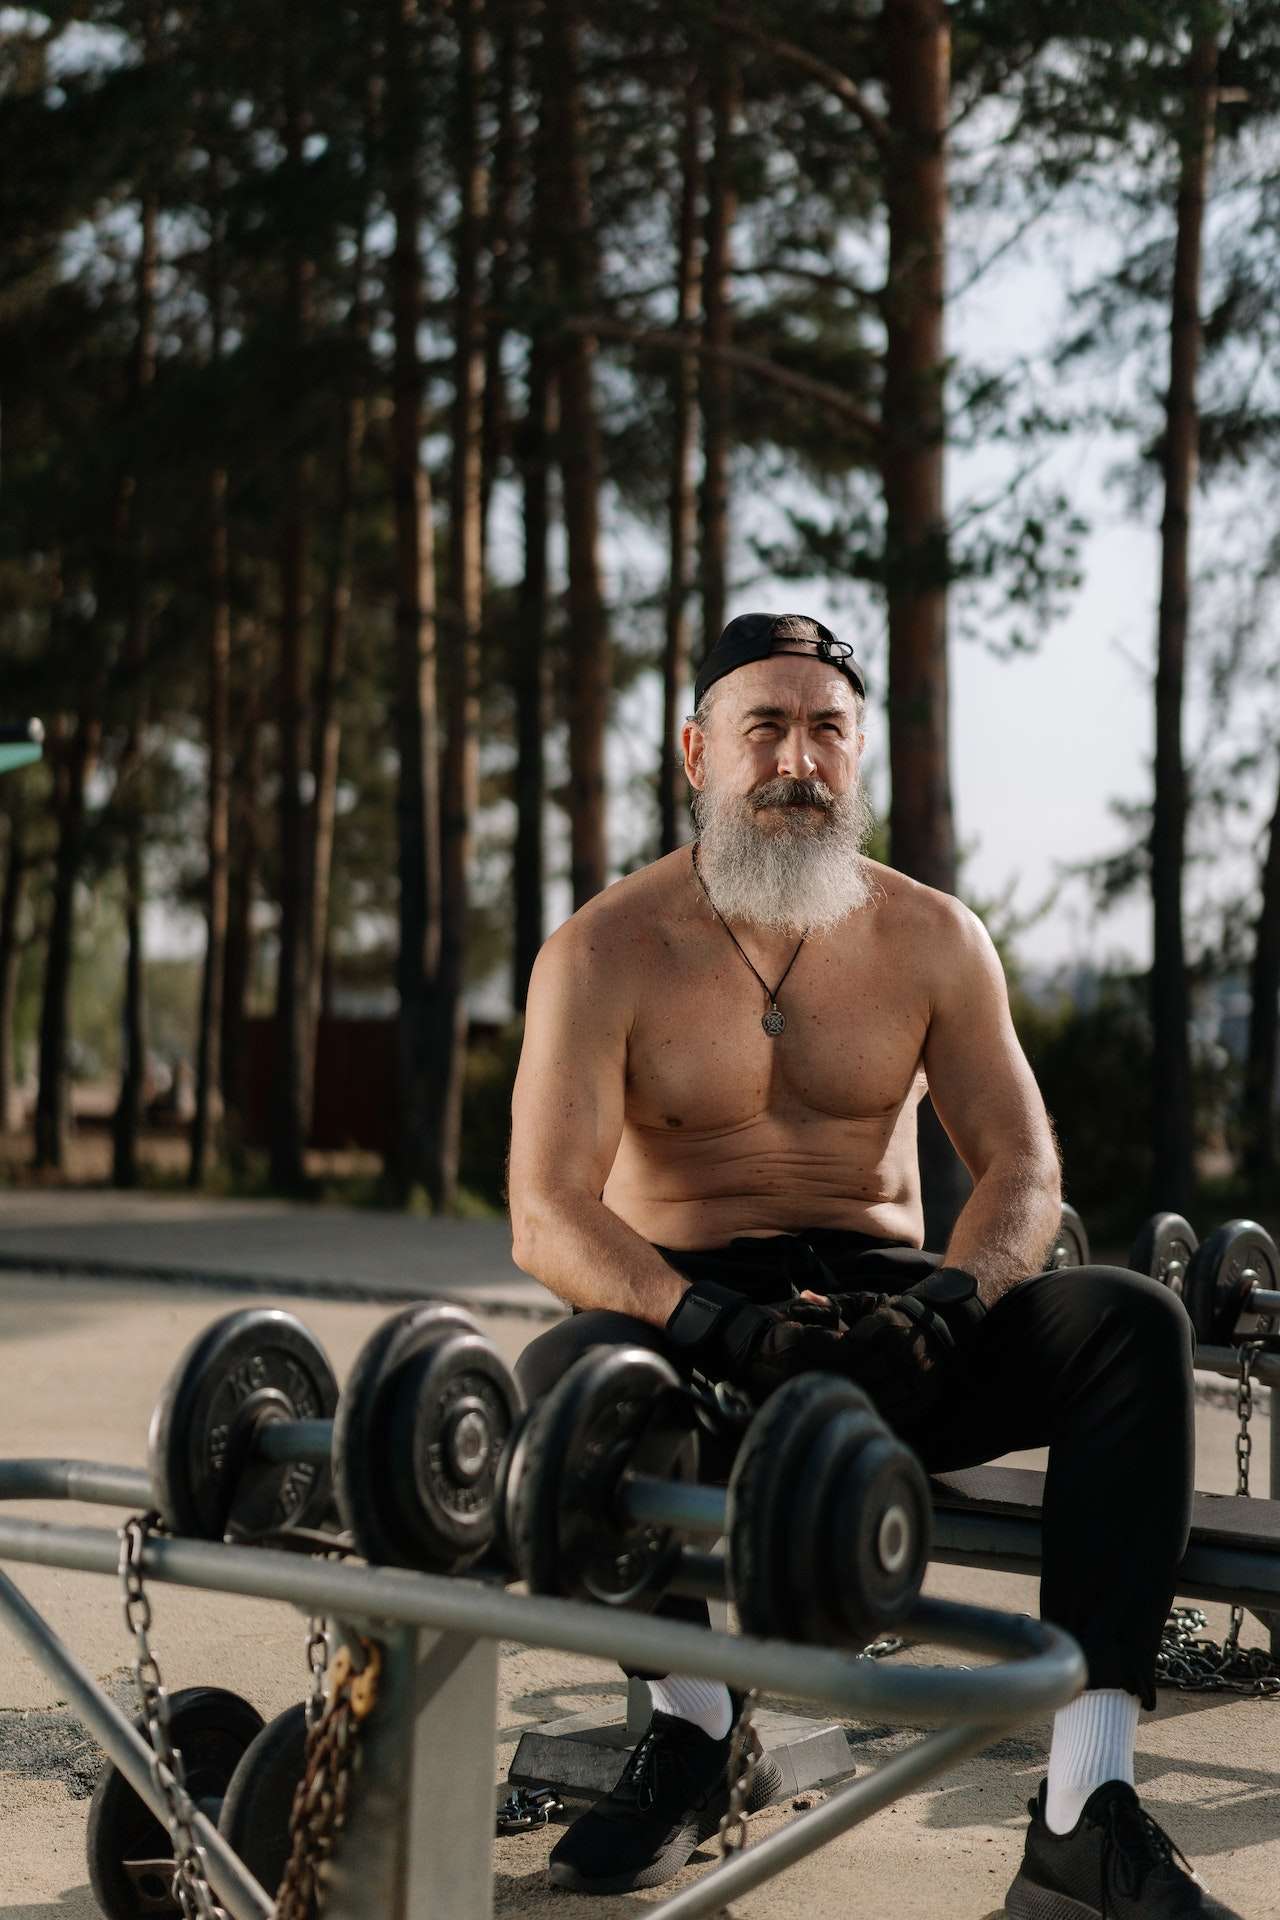 A Shirtless Man at an Outdoor Gym 